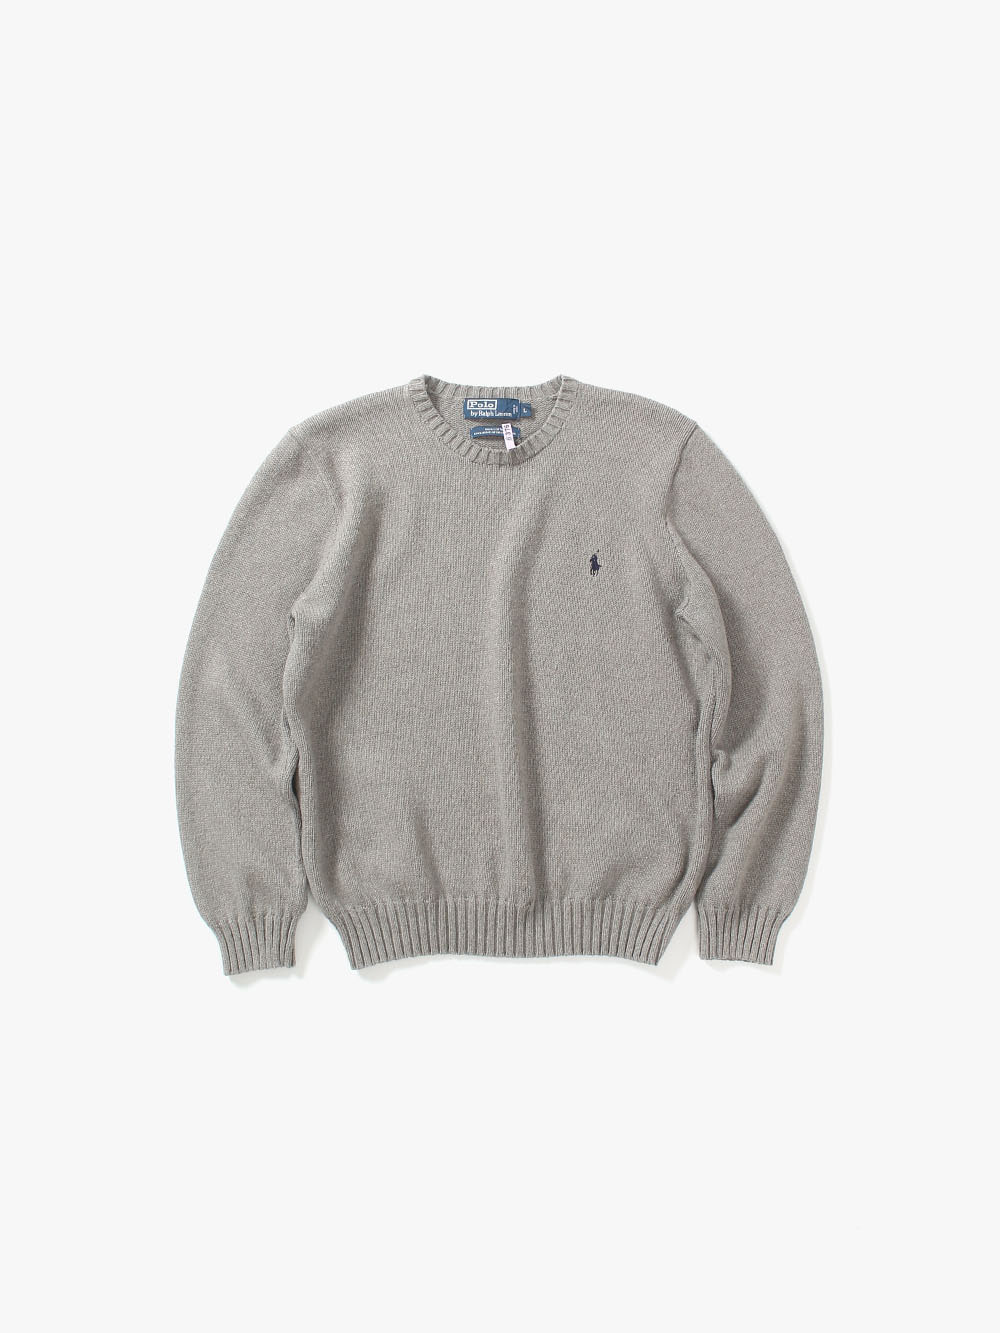 [ L ] Polo Ralph Lauren Sweater (6253)